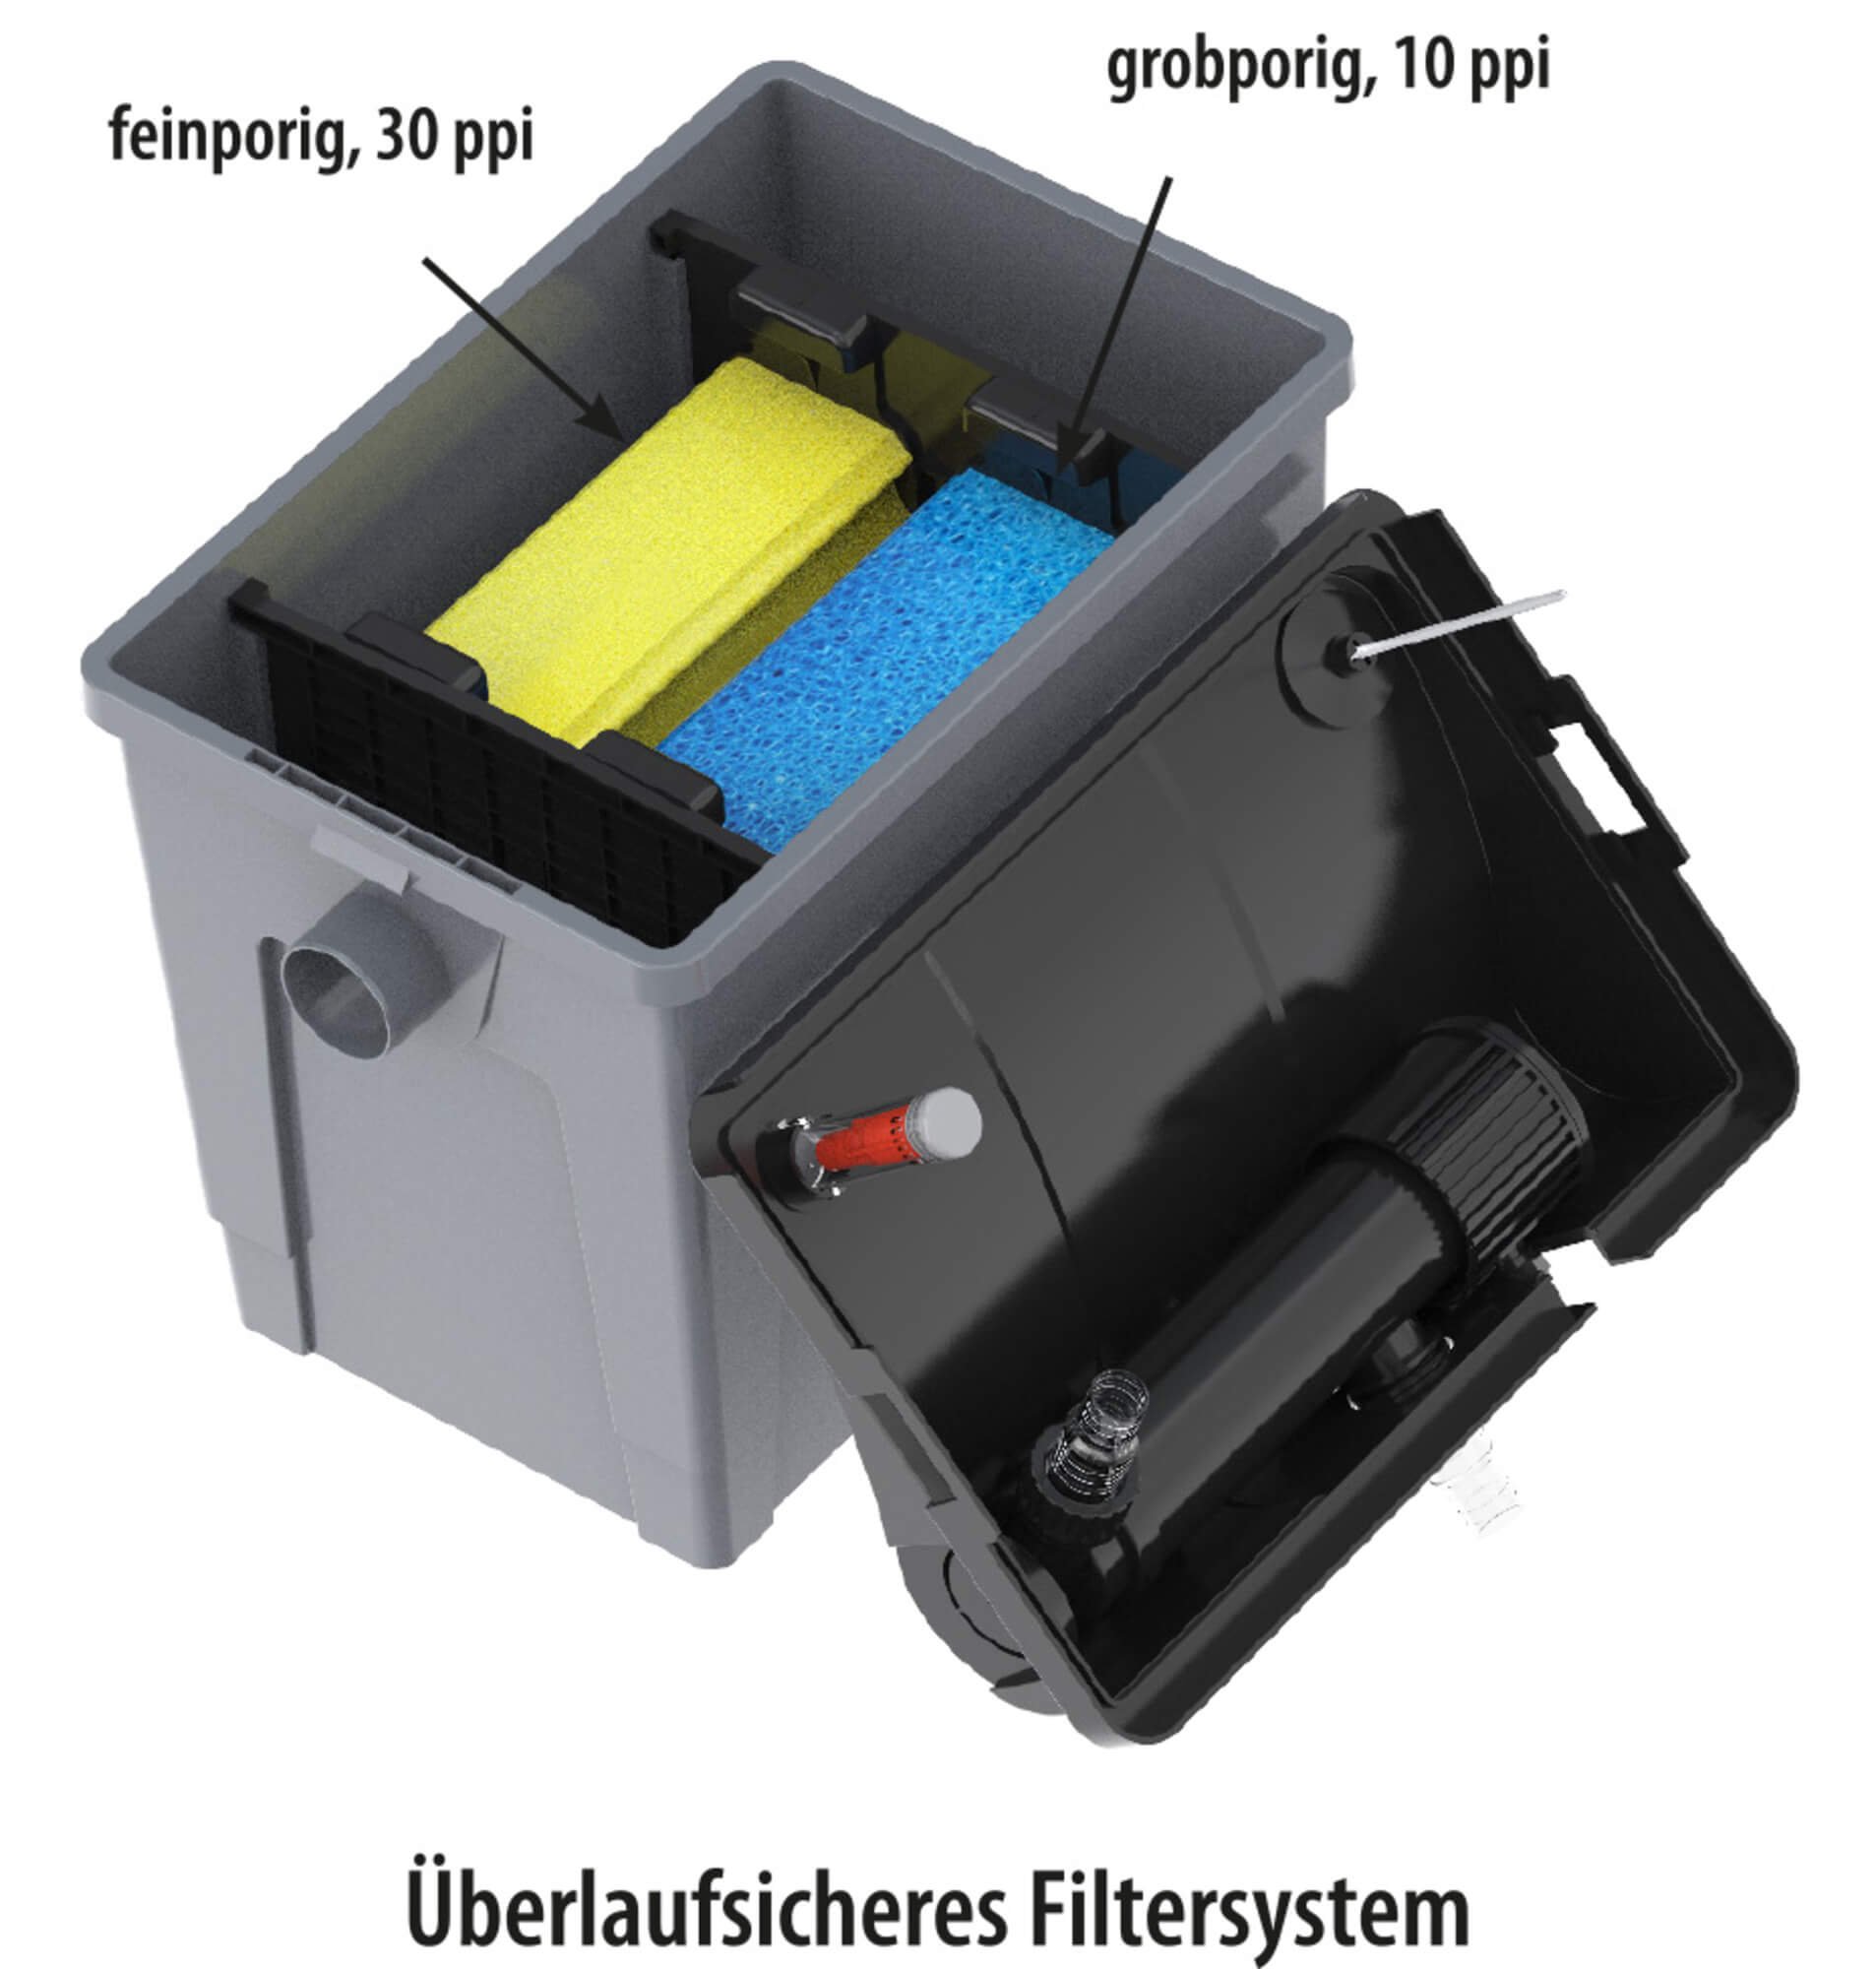 Heissner Durchlauffilter FPU10100-00 inkl. 9 Watt UV-C Teichklärer